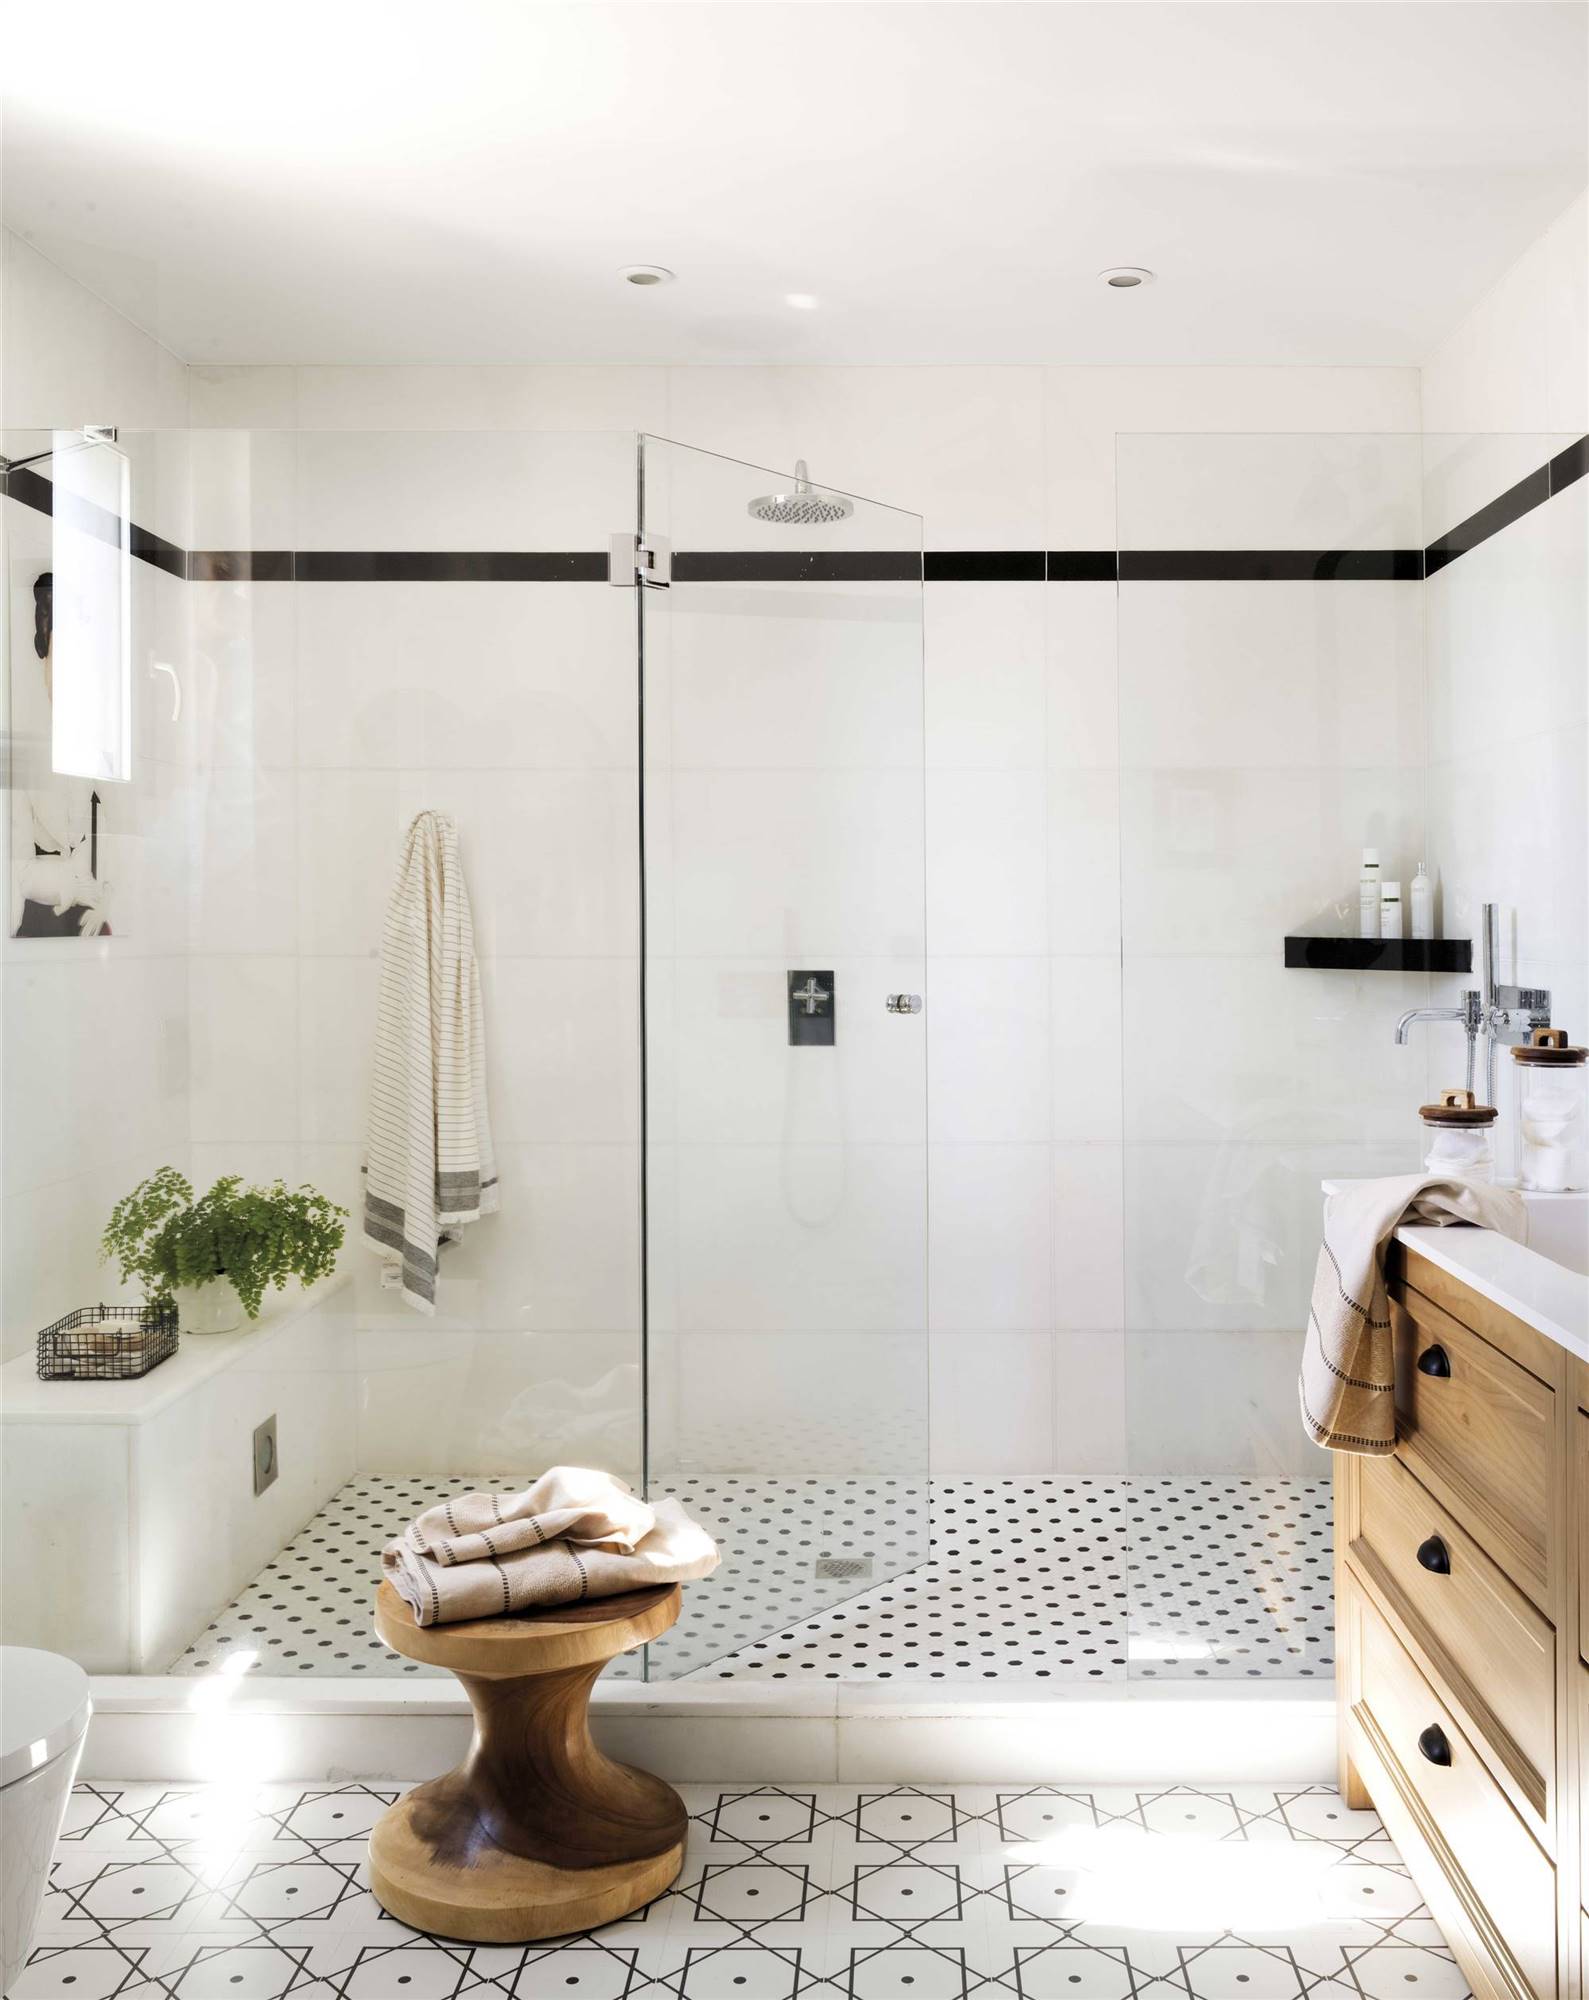 Baño con ducha con las paredes revestidas con azulejos blancos con una cenefa en negro. 